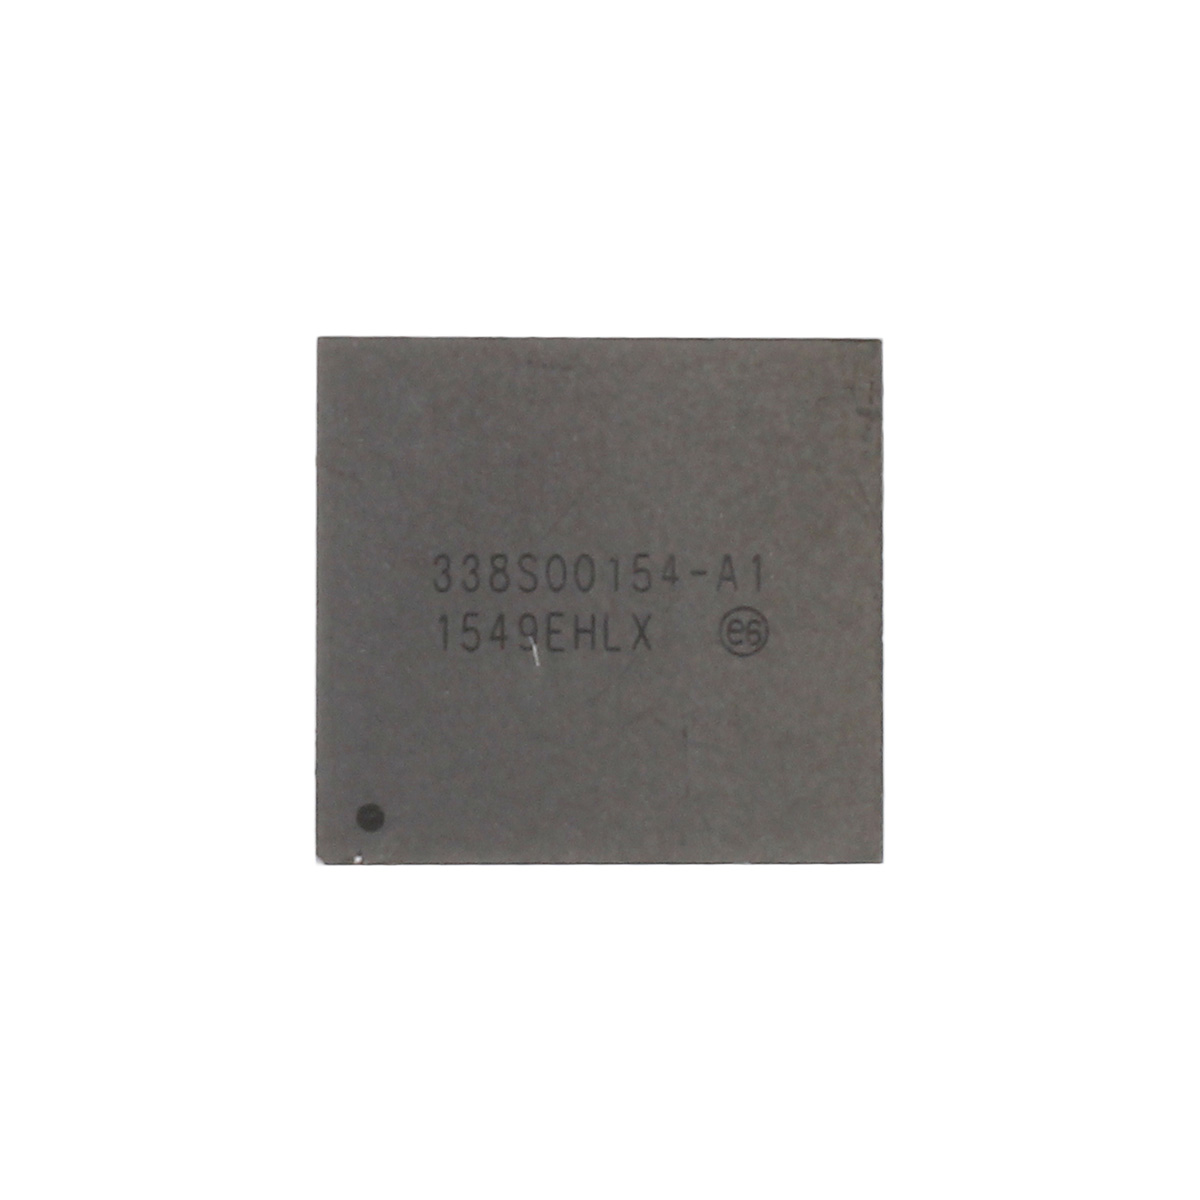 IC-Chip für Power Management Control 338S00154,  kompatibel mit iPhone 6s Plus